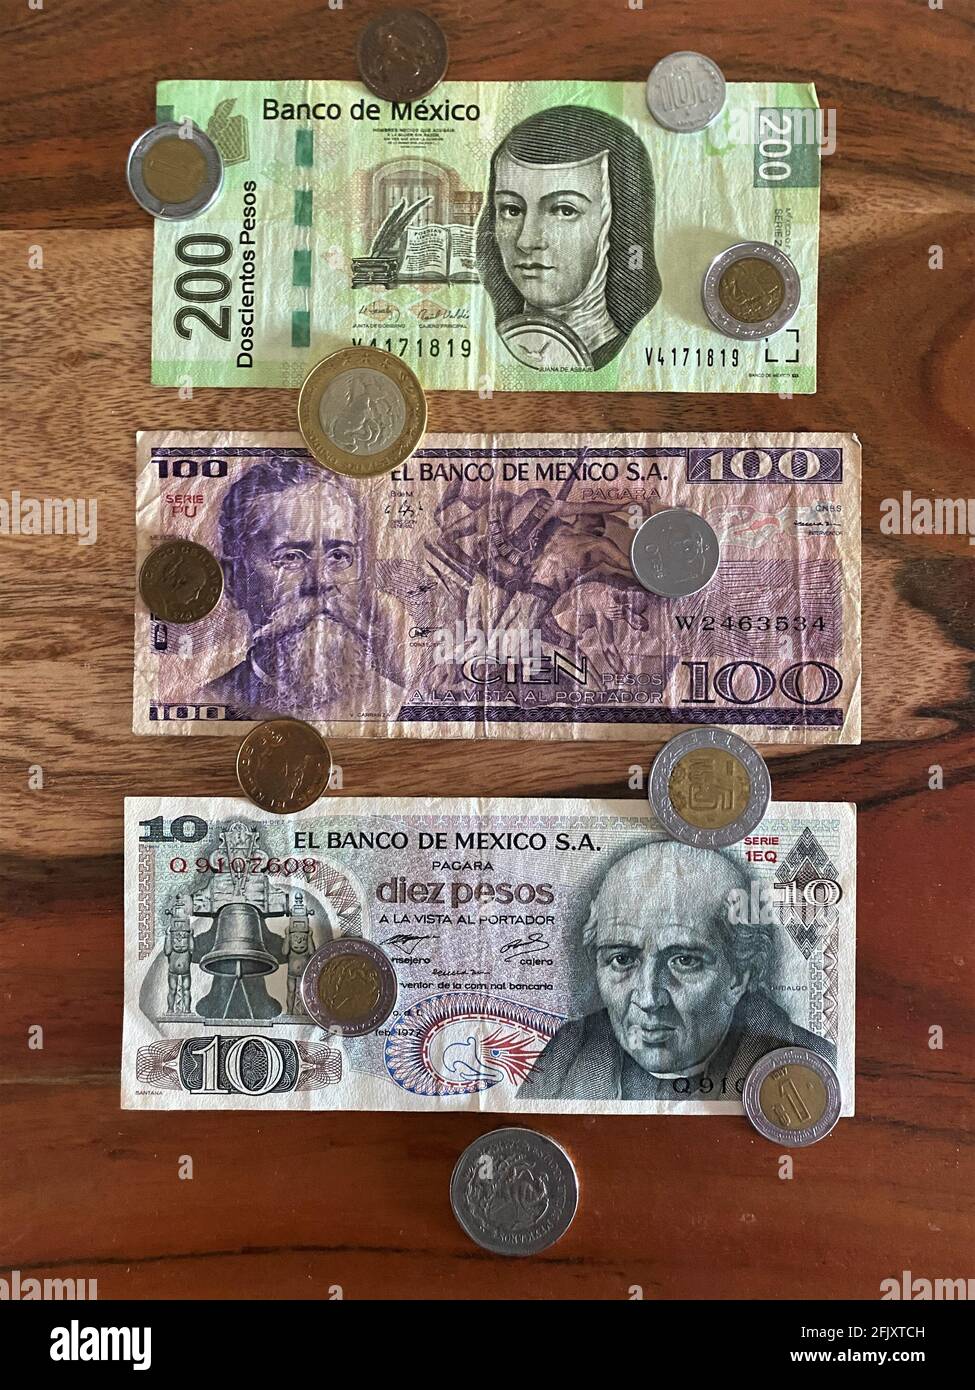 Pesos mexicains, billets de banque, billets de monnaie et pièces sur fond de bois. Monnaie mexicaine Banque D'Images